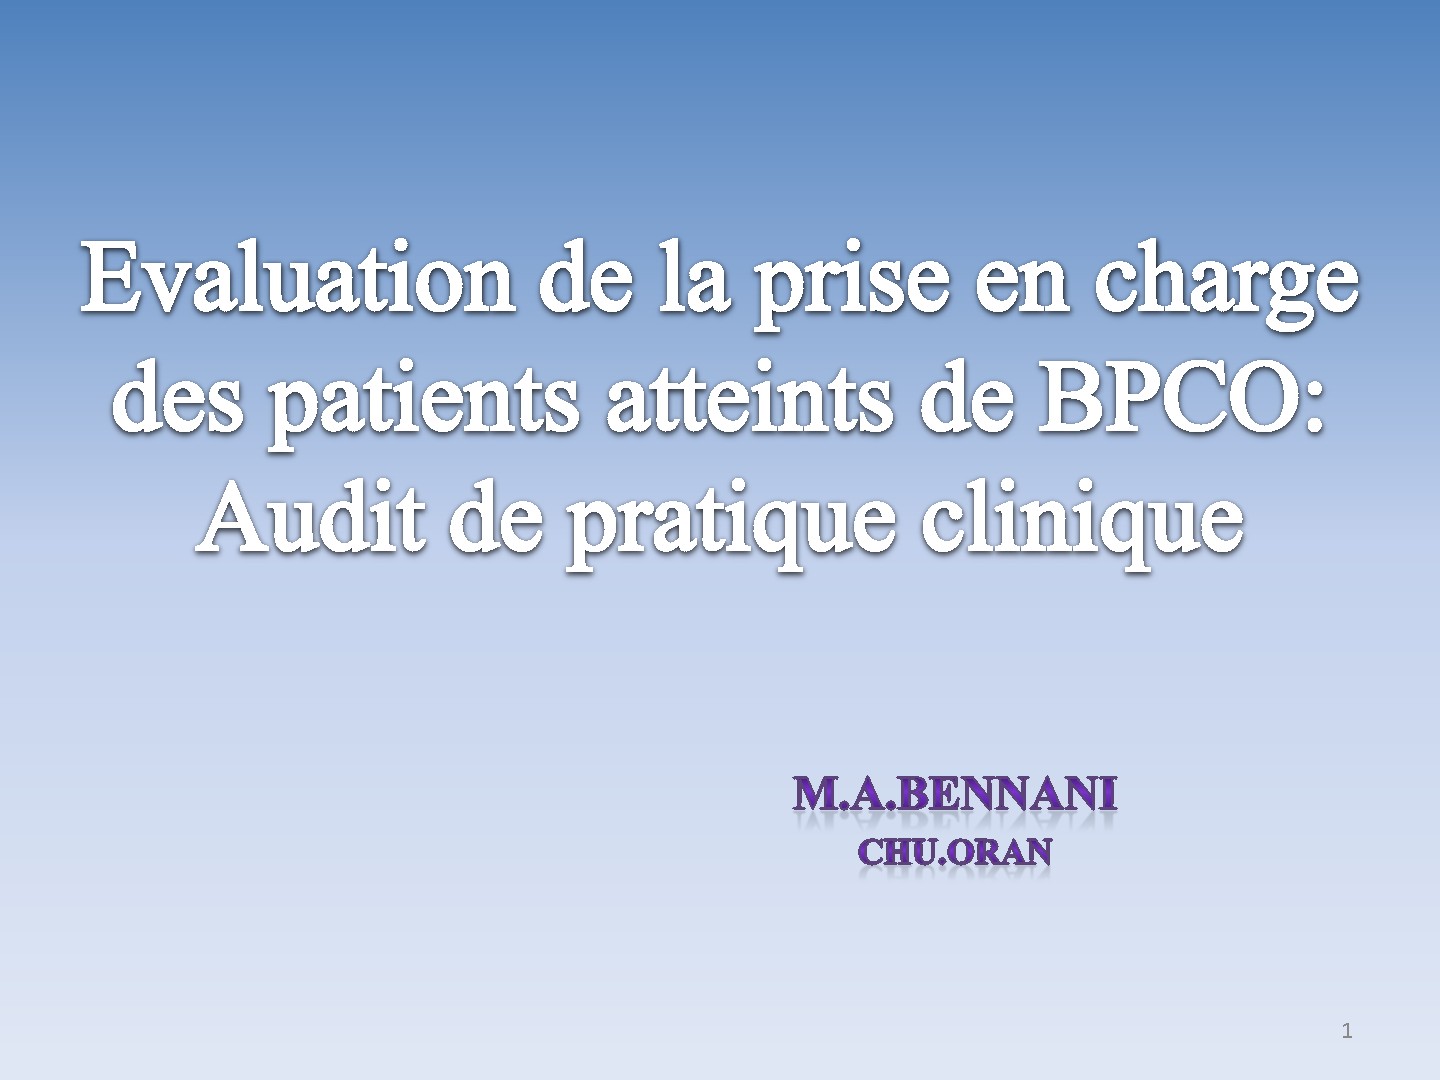 BPCO audit de la pratique clinique. M. A. BENNANI